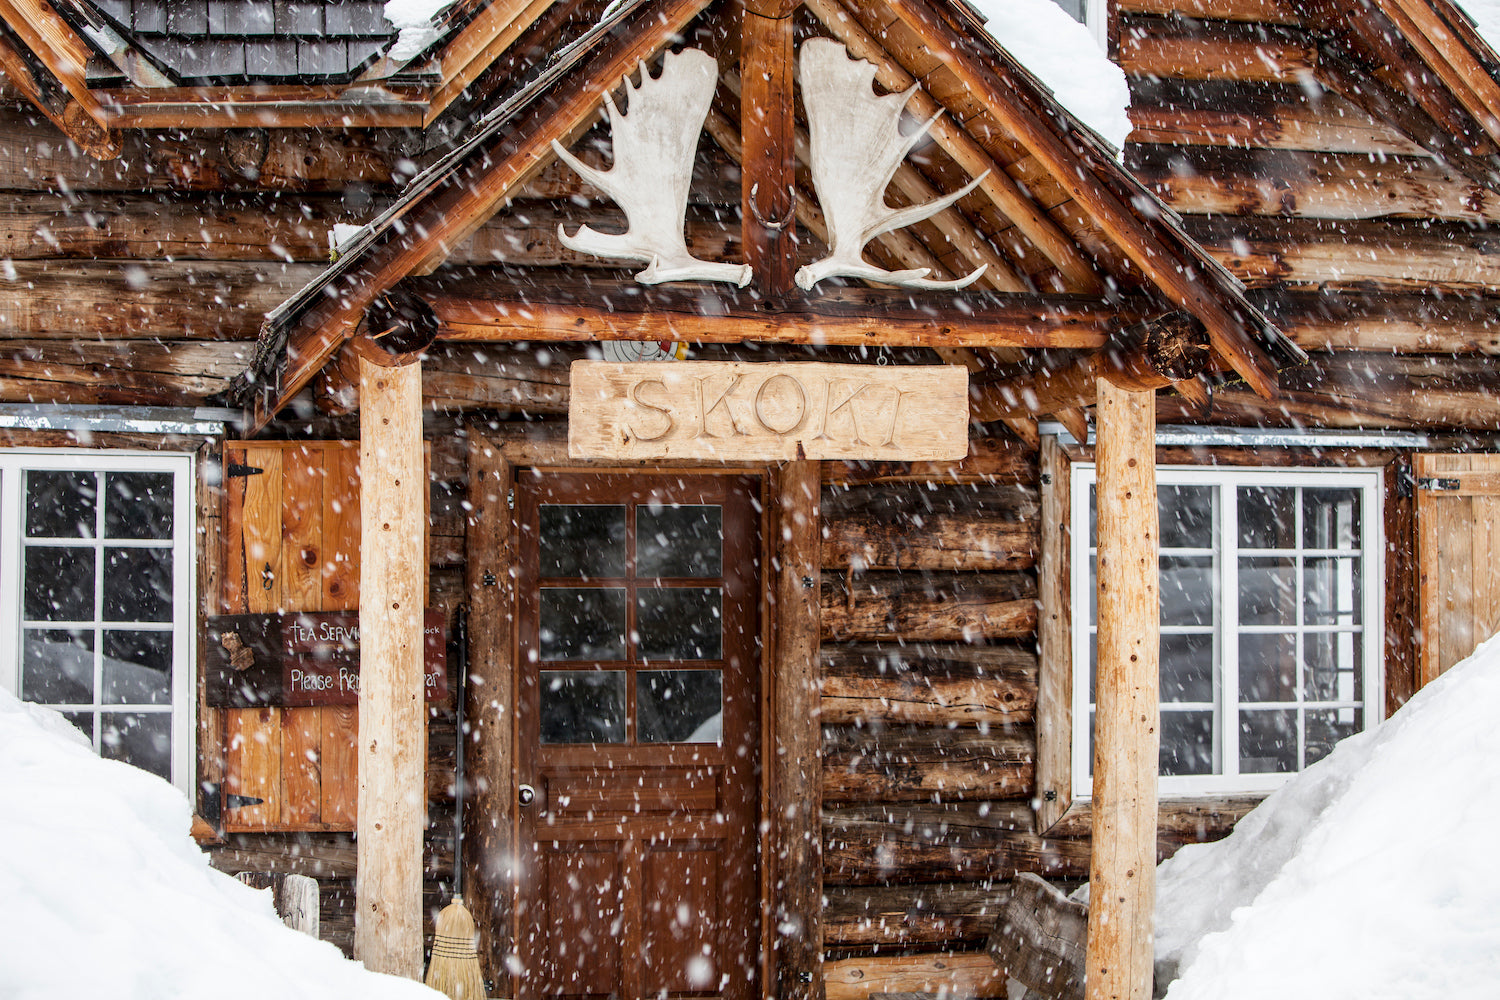 Snowfall at Skoki (Skoki Lodge)